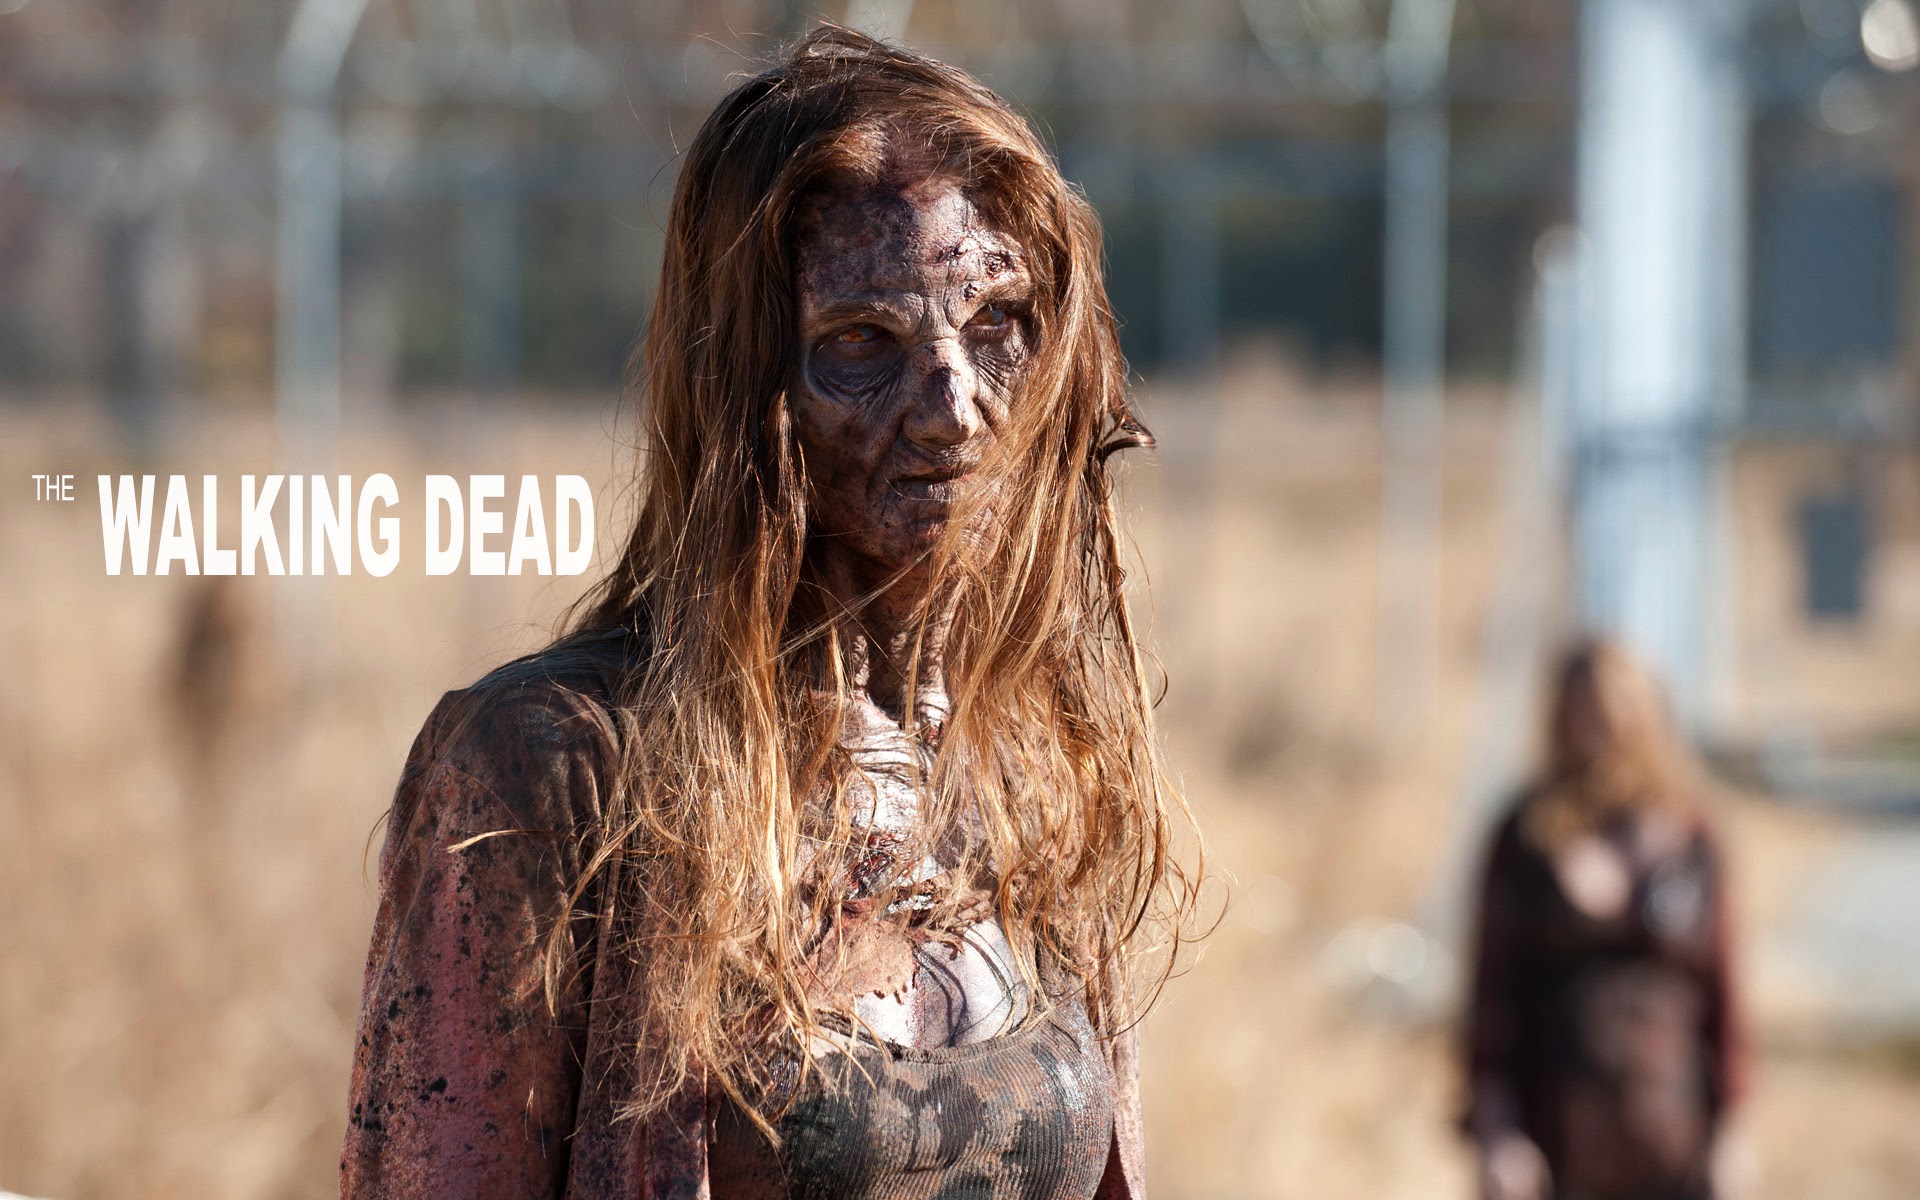 The Walking Dead Female Zombie Wallpaper Hiresmoall